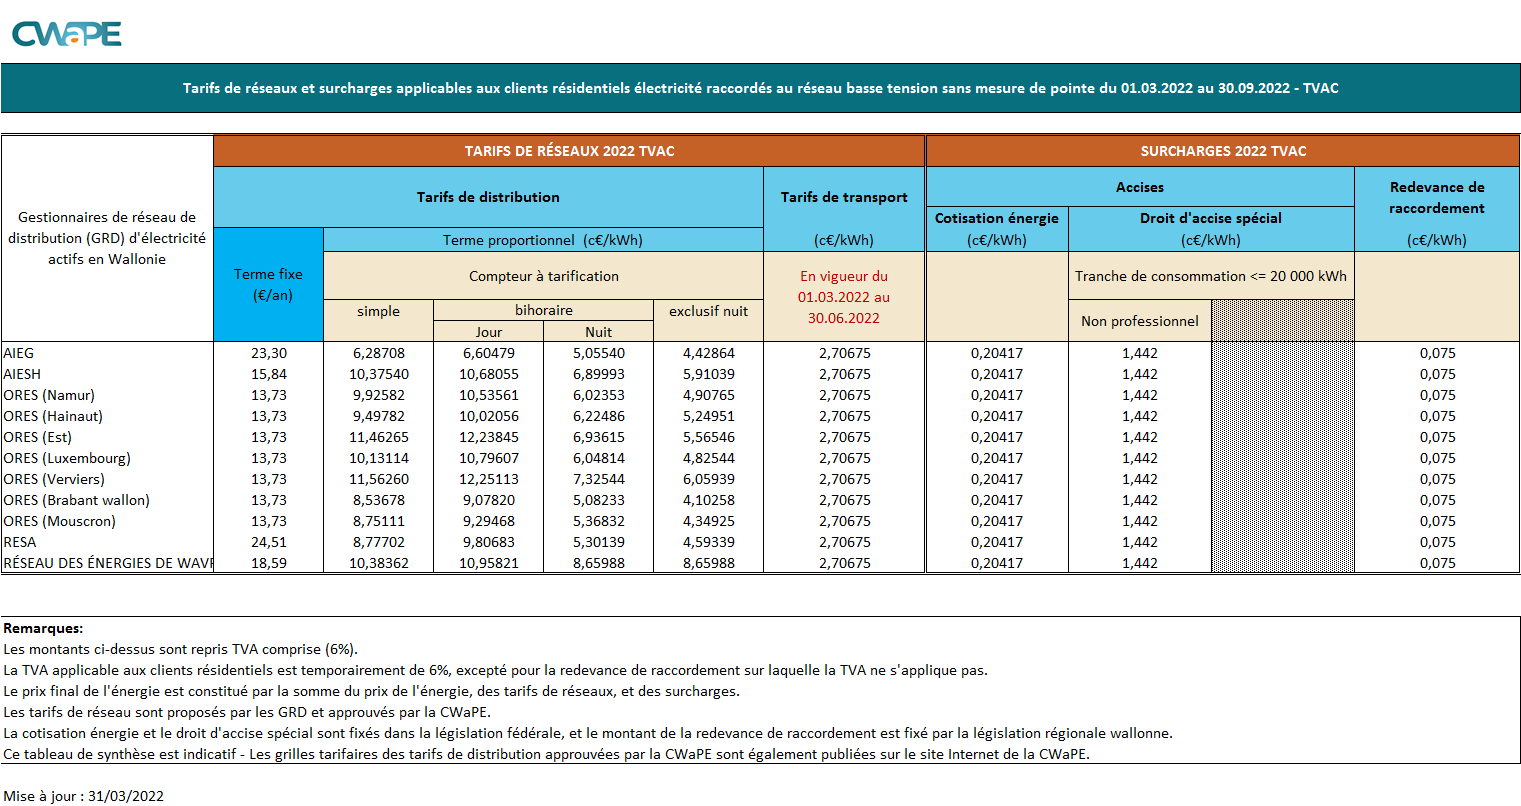 Synthèse des tarifs de distribution d'électricité TVAC - 01.03.2022-30.09.2022